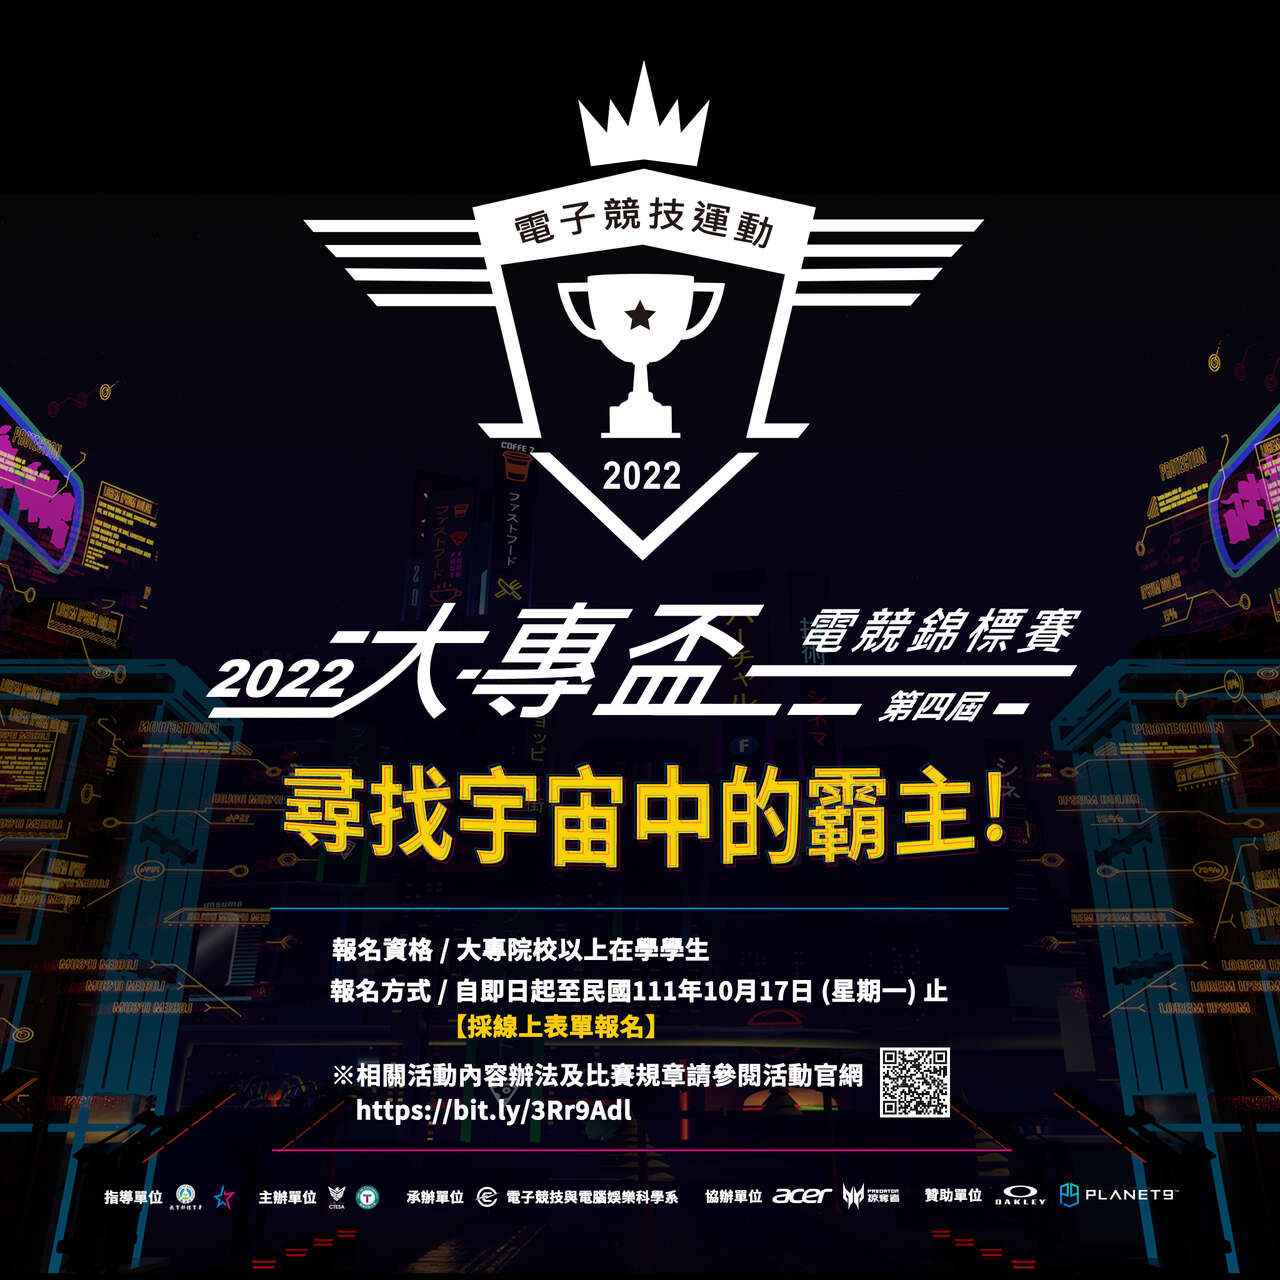 中華民國電競協會 尋找大學最強霸主 2022大專盃電競錦標賽開賽報名。官方提供